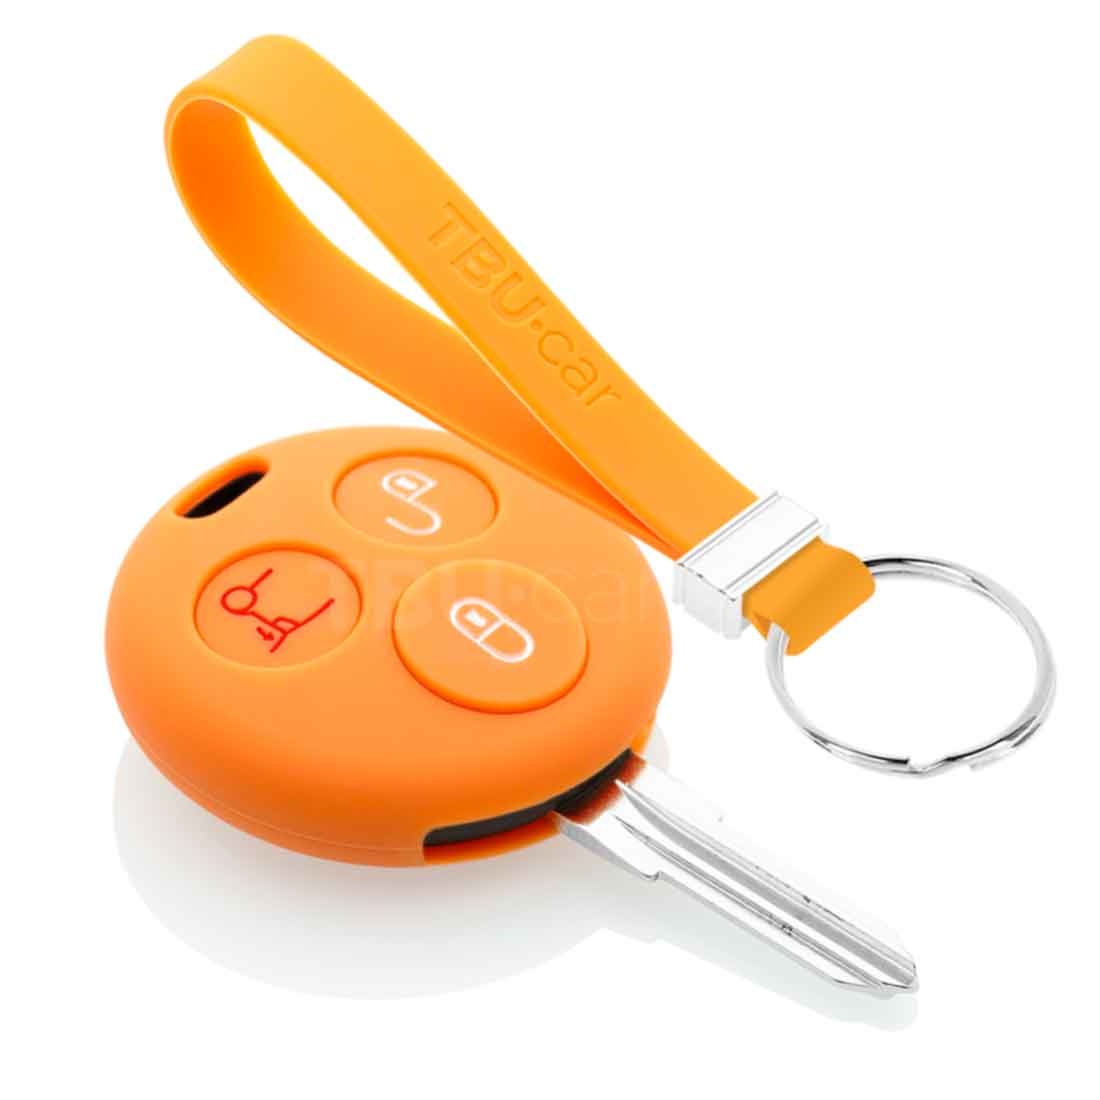 TBU car TBU car Housse de Protection clé compatible avec Smart - Coque Cover Housse étui en Silicone - Orange